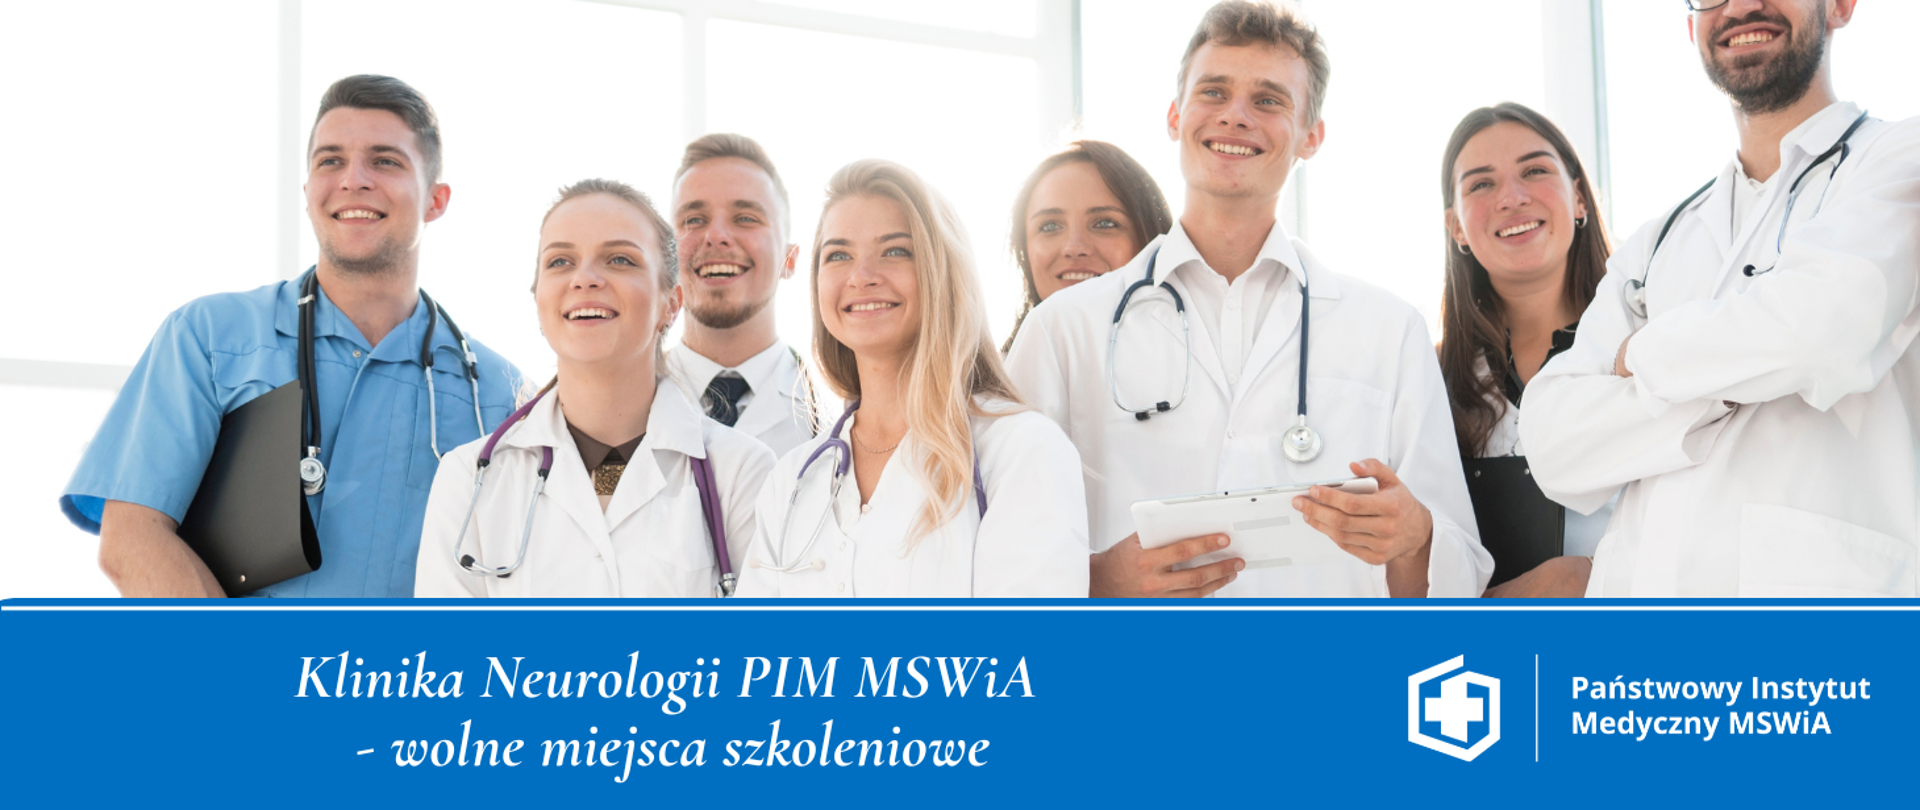 Klinika Neurologii PIM MSWiA
- wolne miejsca szkoleniowe